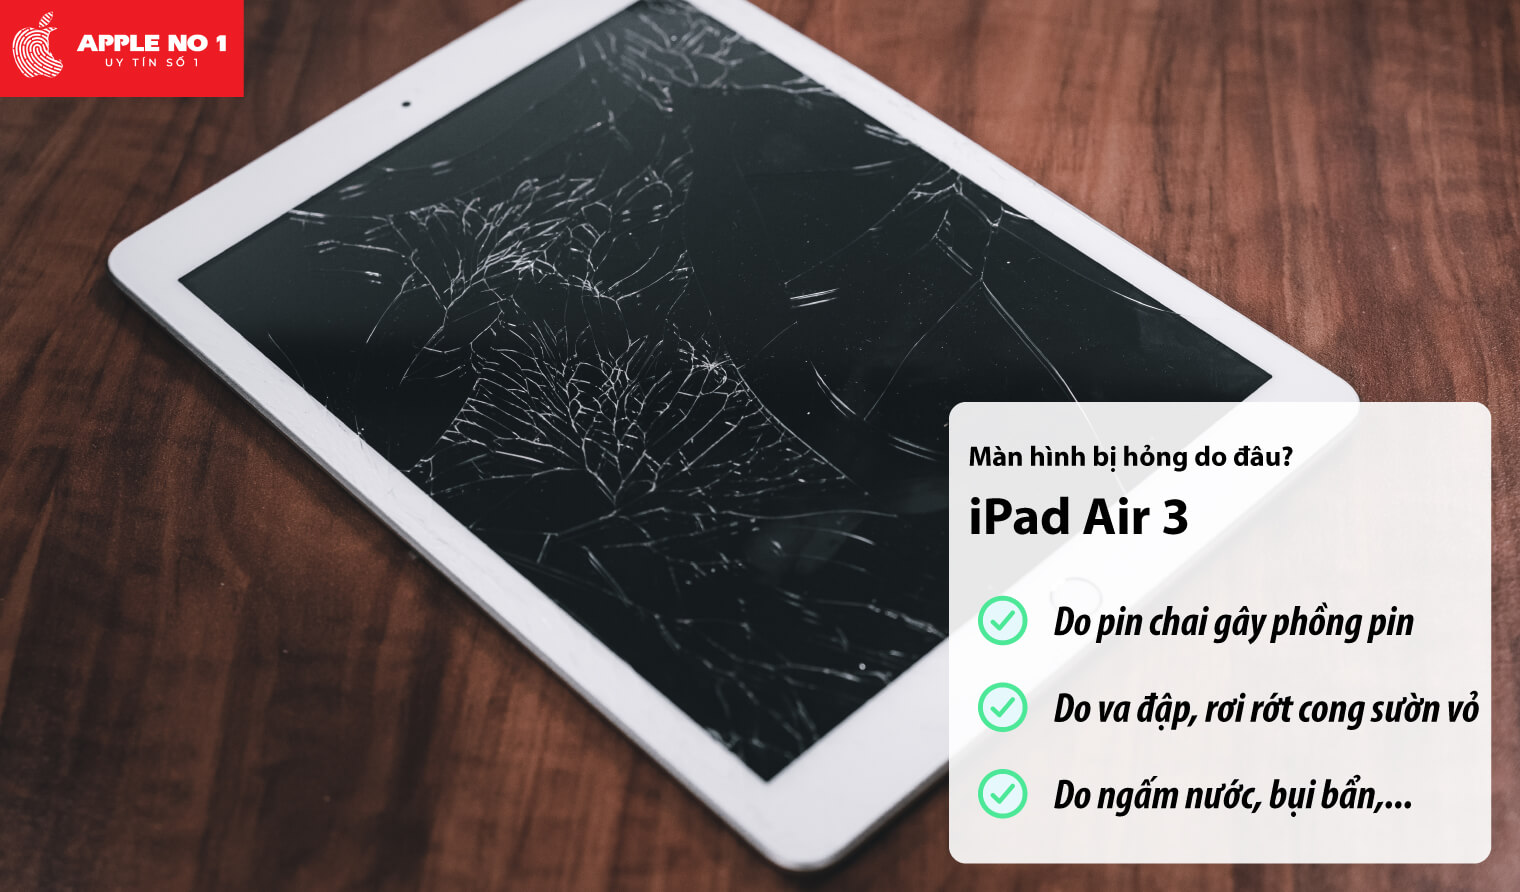 Màn hình iPad air 3 bị hỏng do đâu?